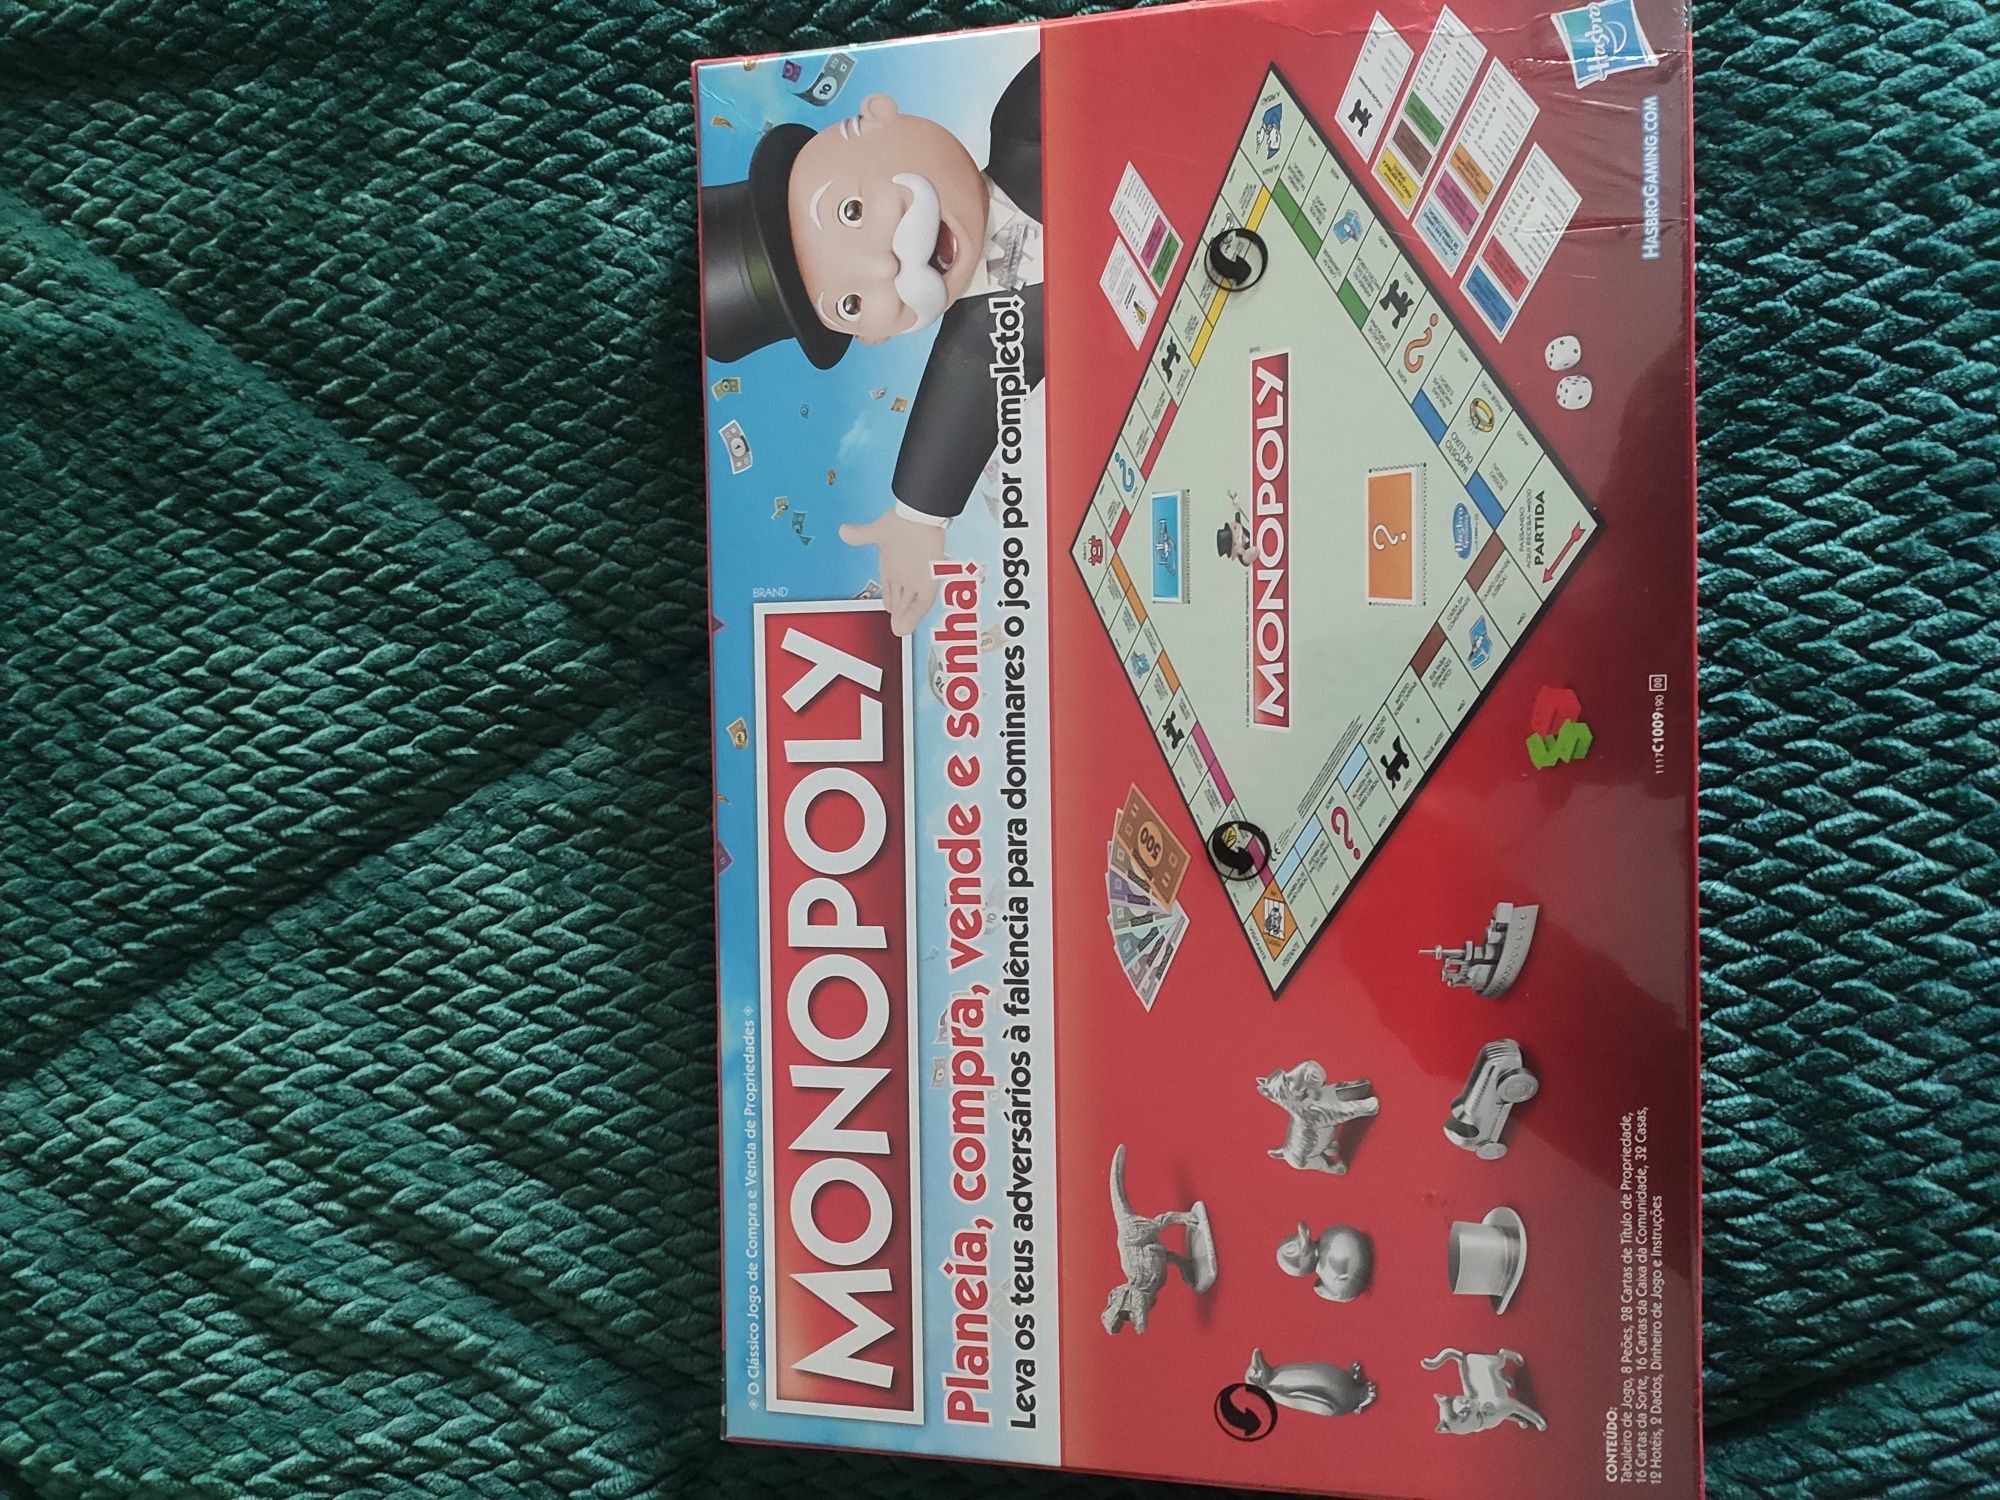 Monopoly Clássico